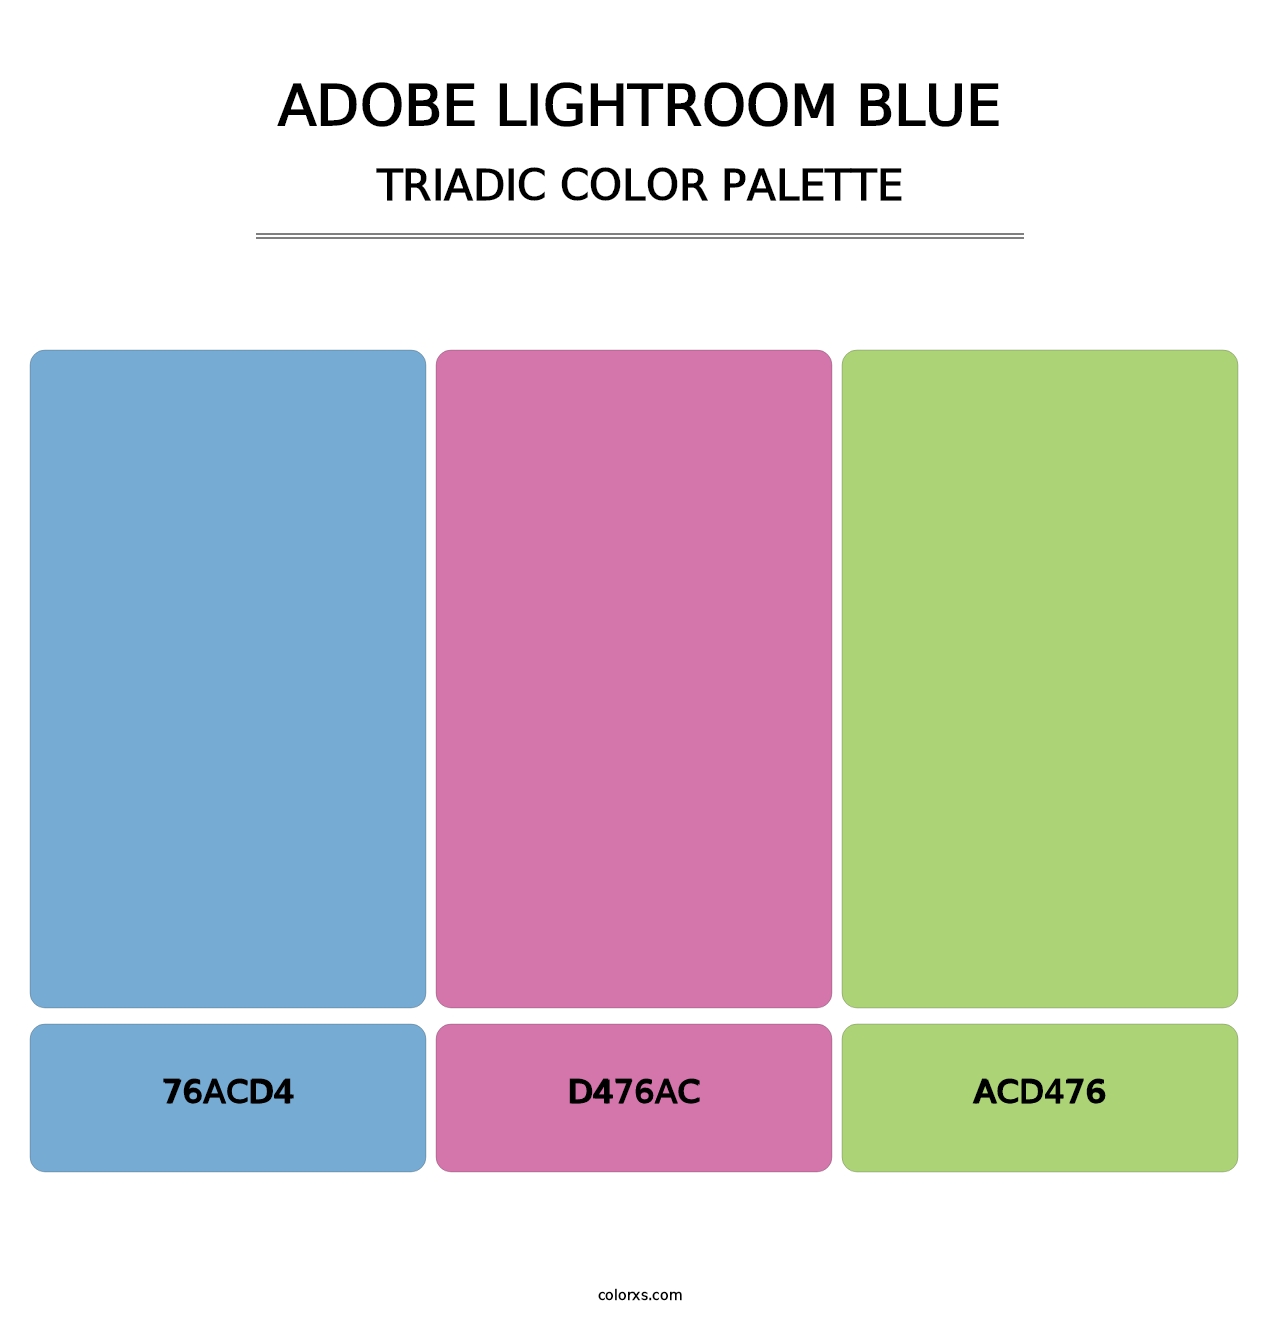 Adobe Lightroom Blue - Triadic Color Palette